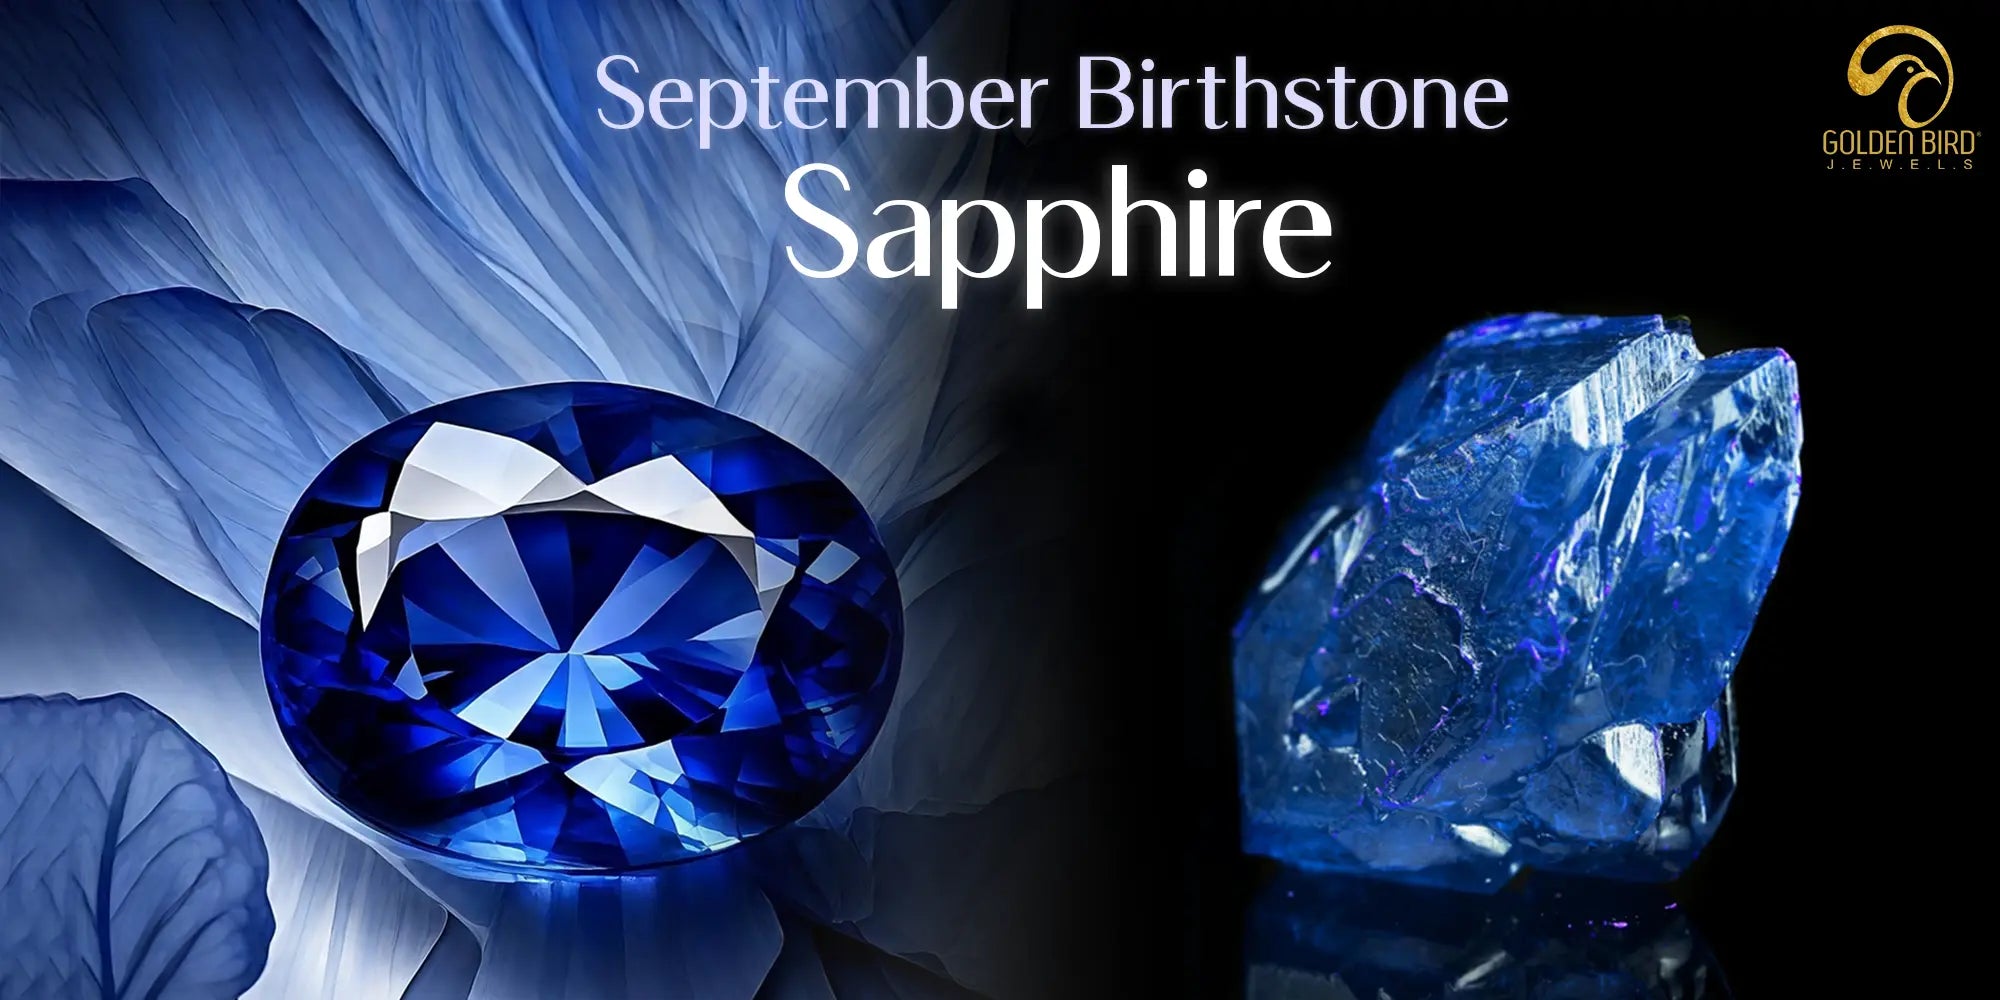 [September Birthstone Sapphire Stunning Blue Gemstone Displayed Against Floral and Dark Background]-[goldenbirdjewles]